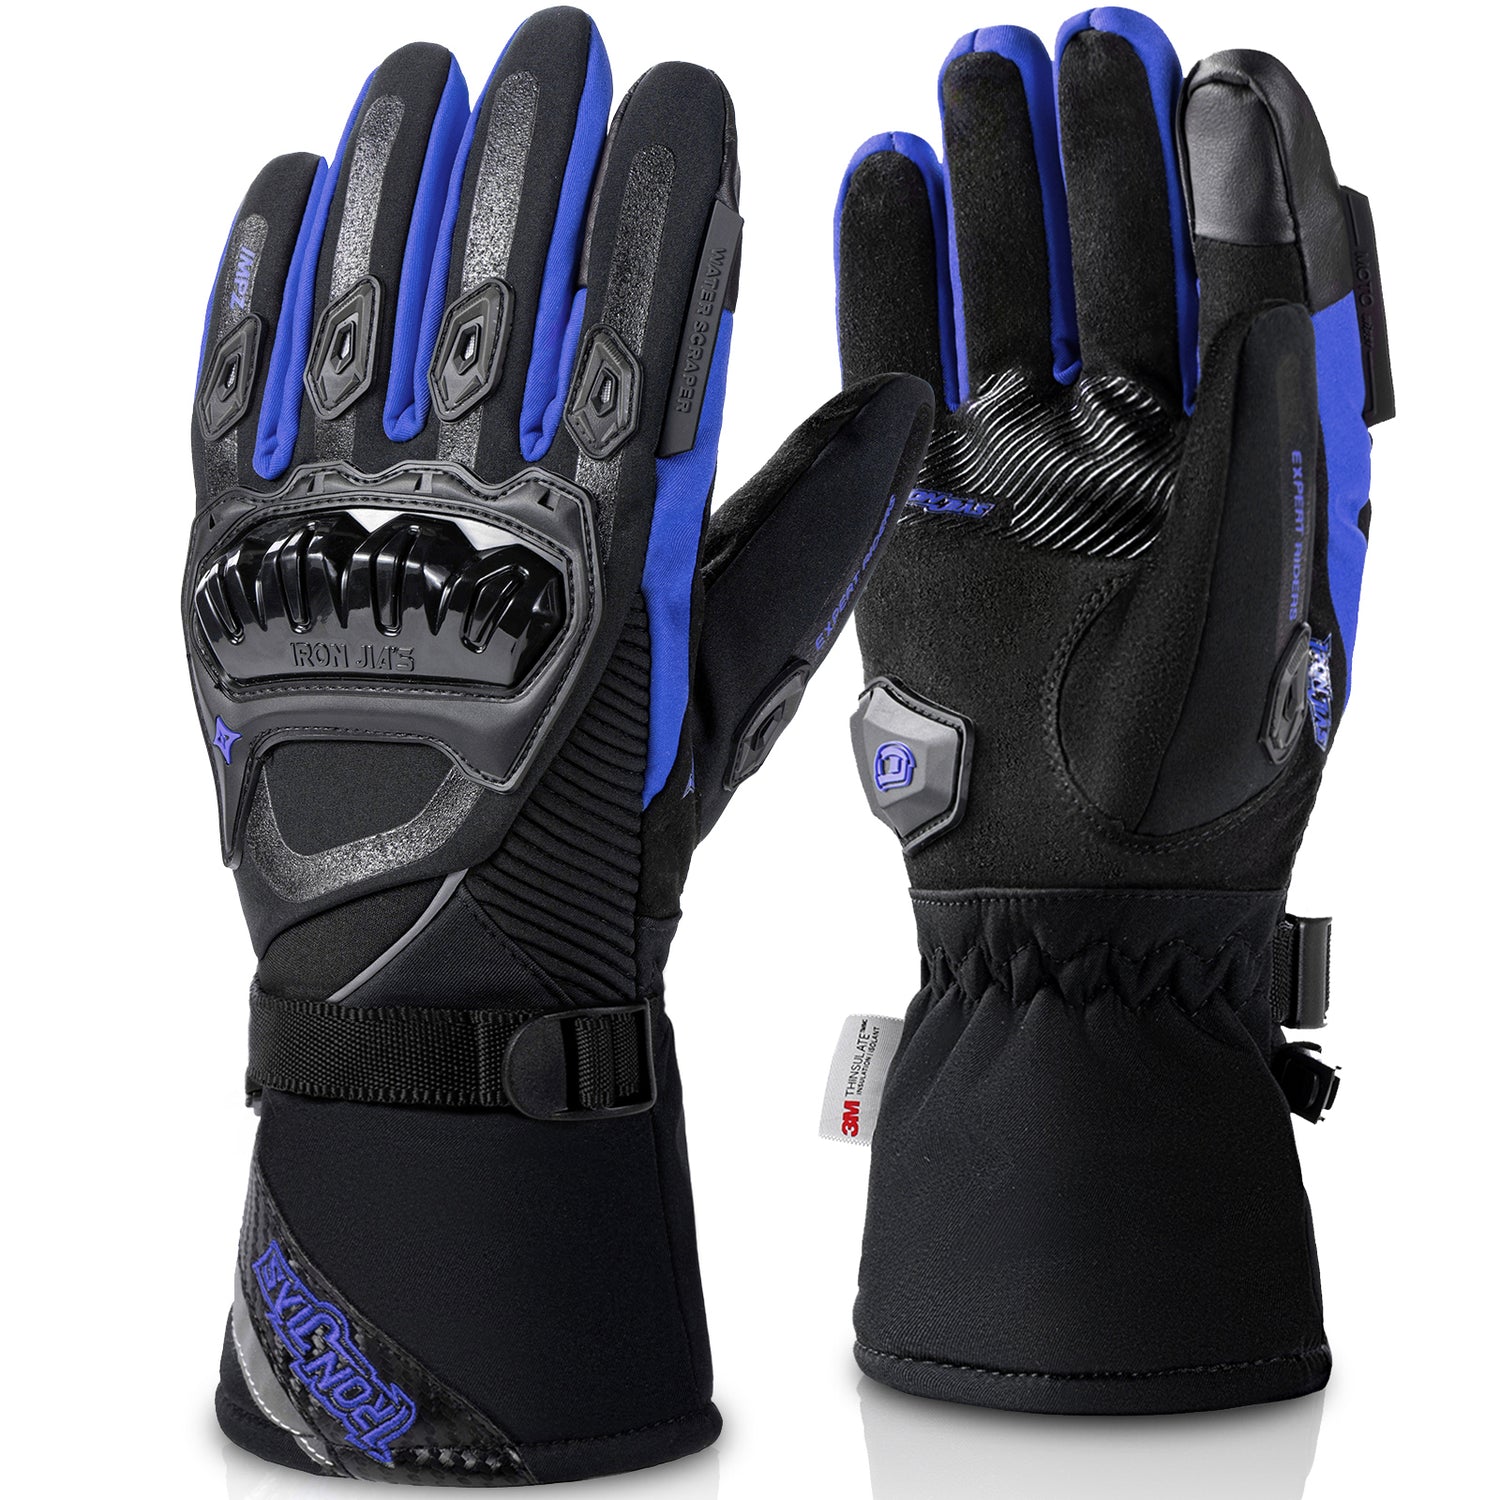 Blue Waterproof Winter Motorcycle Gloves